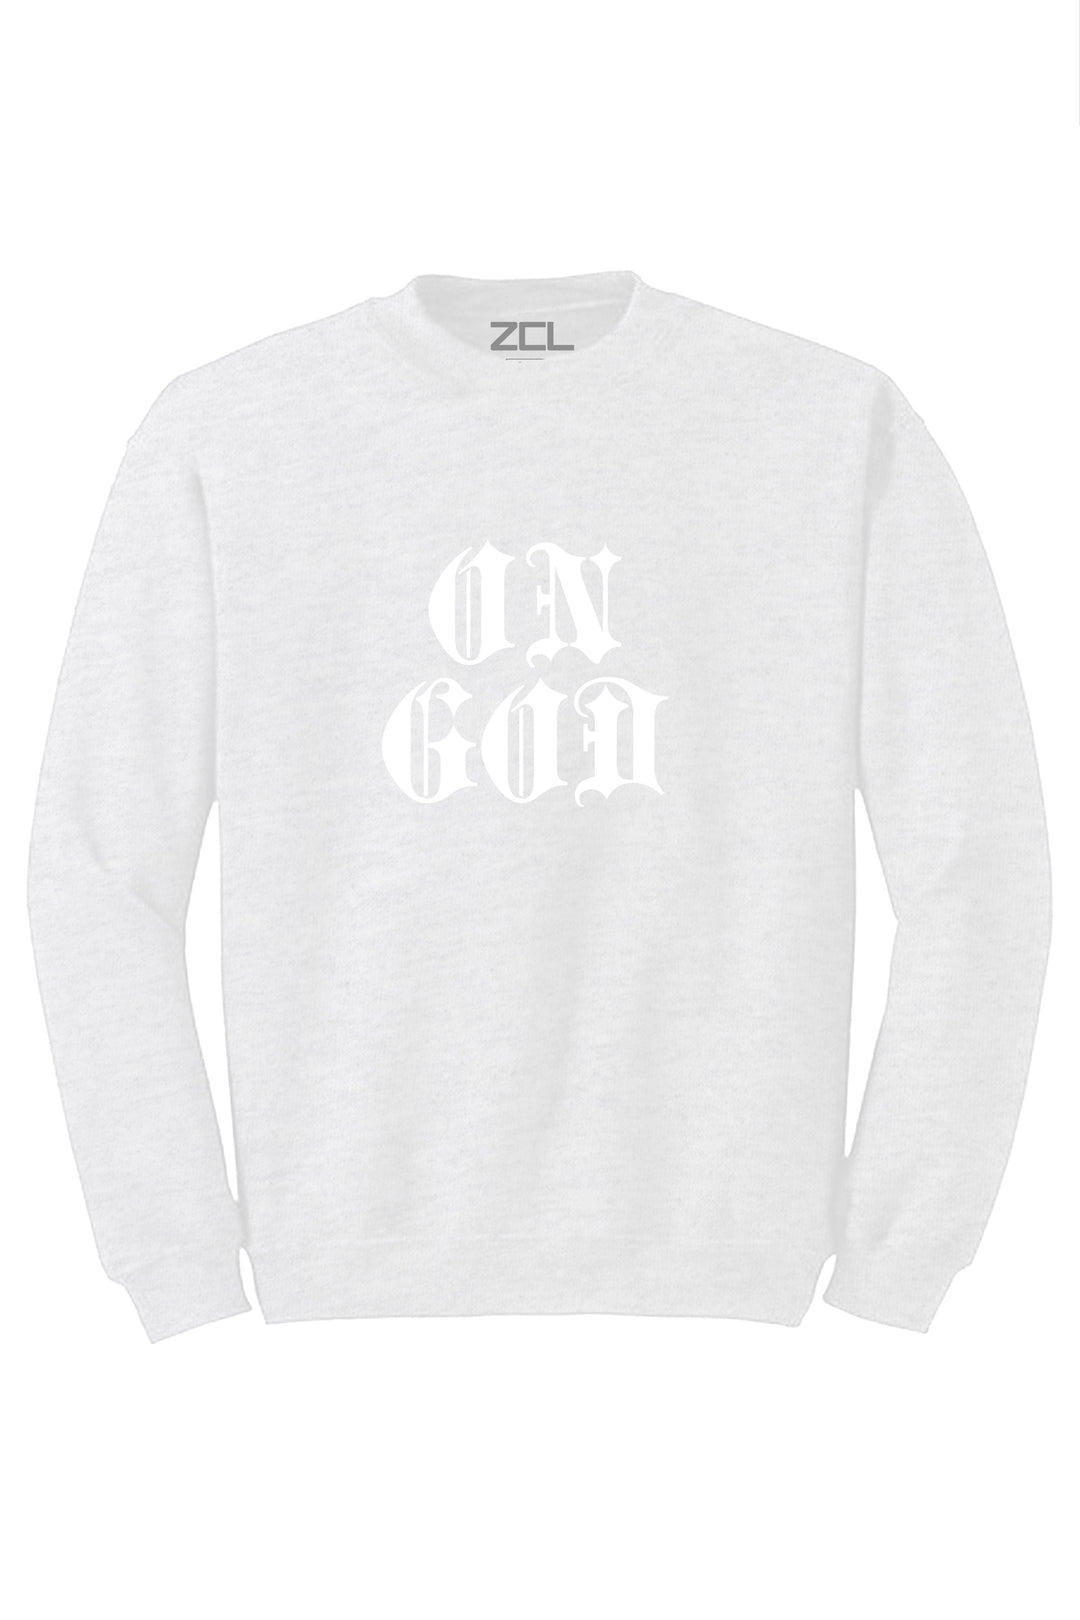 On God Crewneck Sweatshirt (White Logo) - Zamage